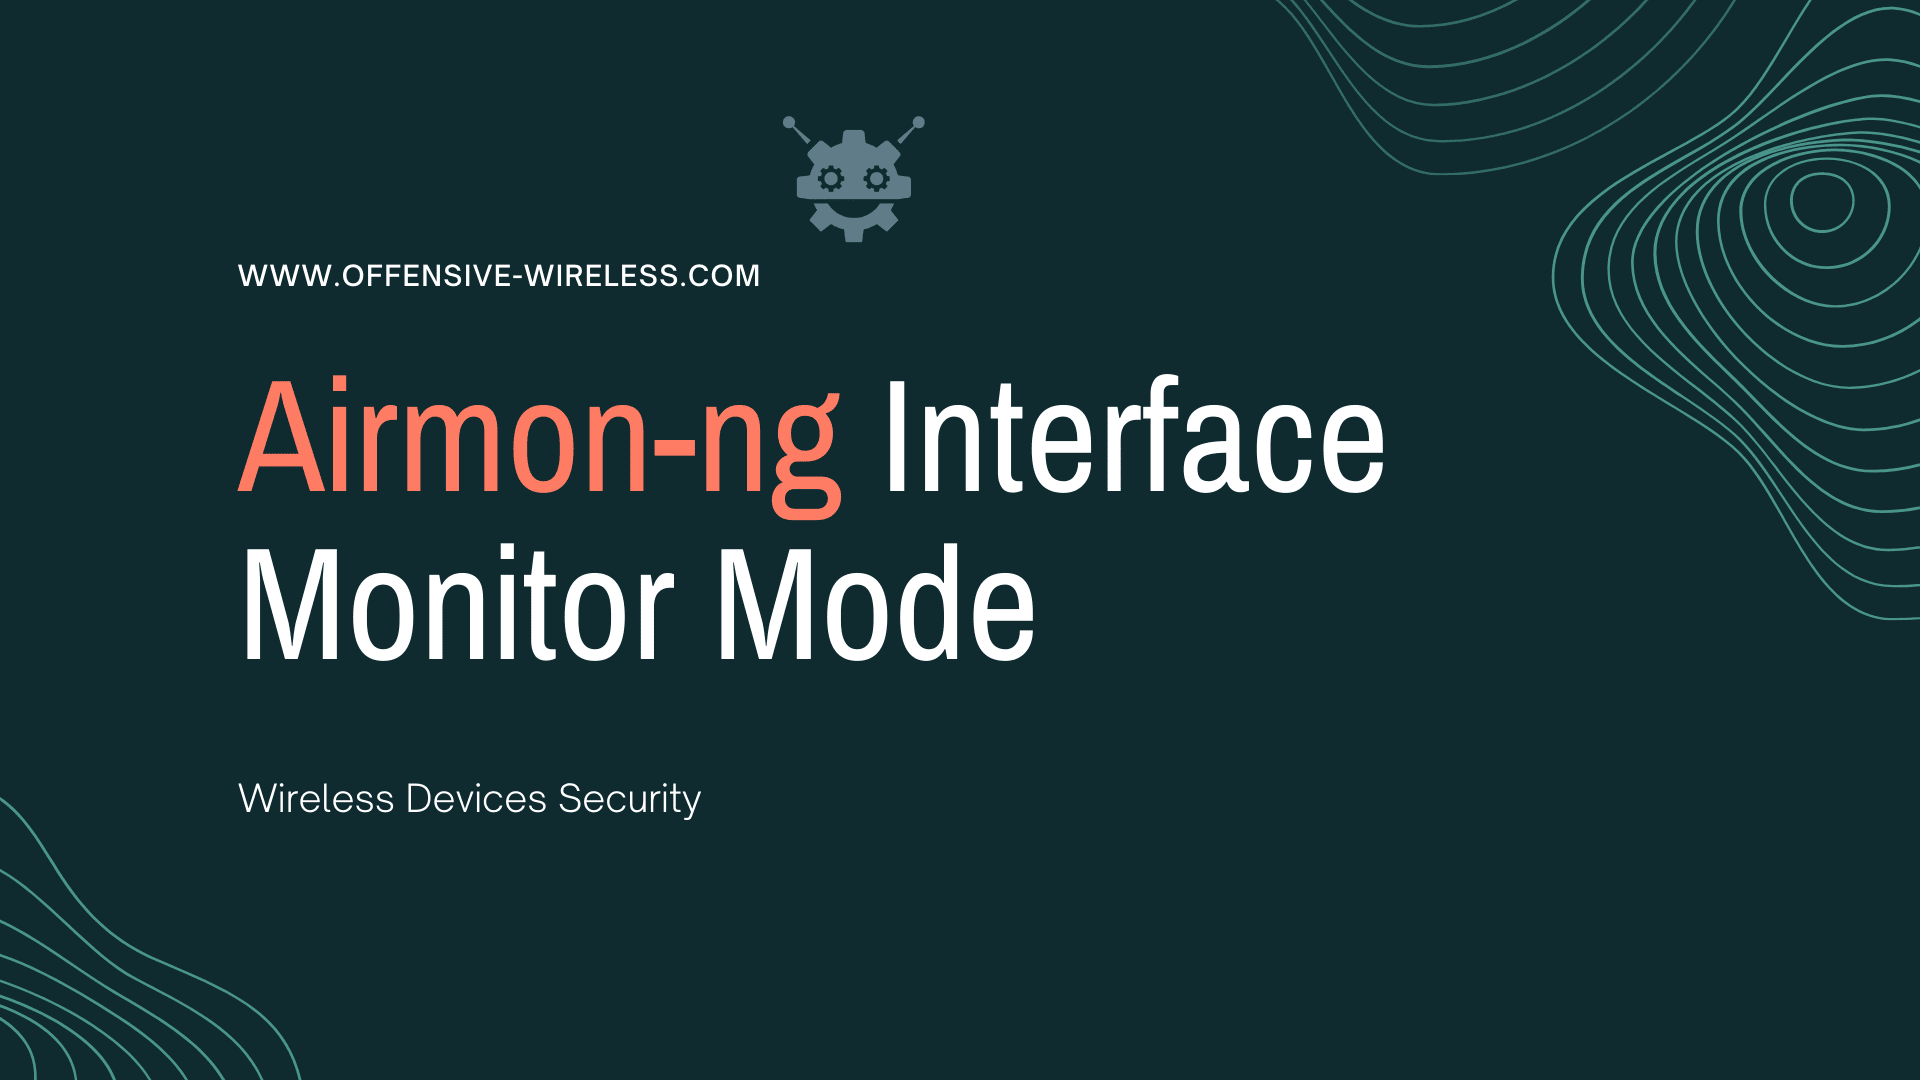 Interface monitor mode: Airmon-ng